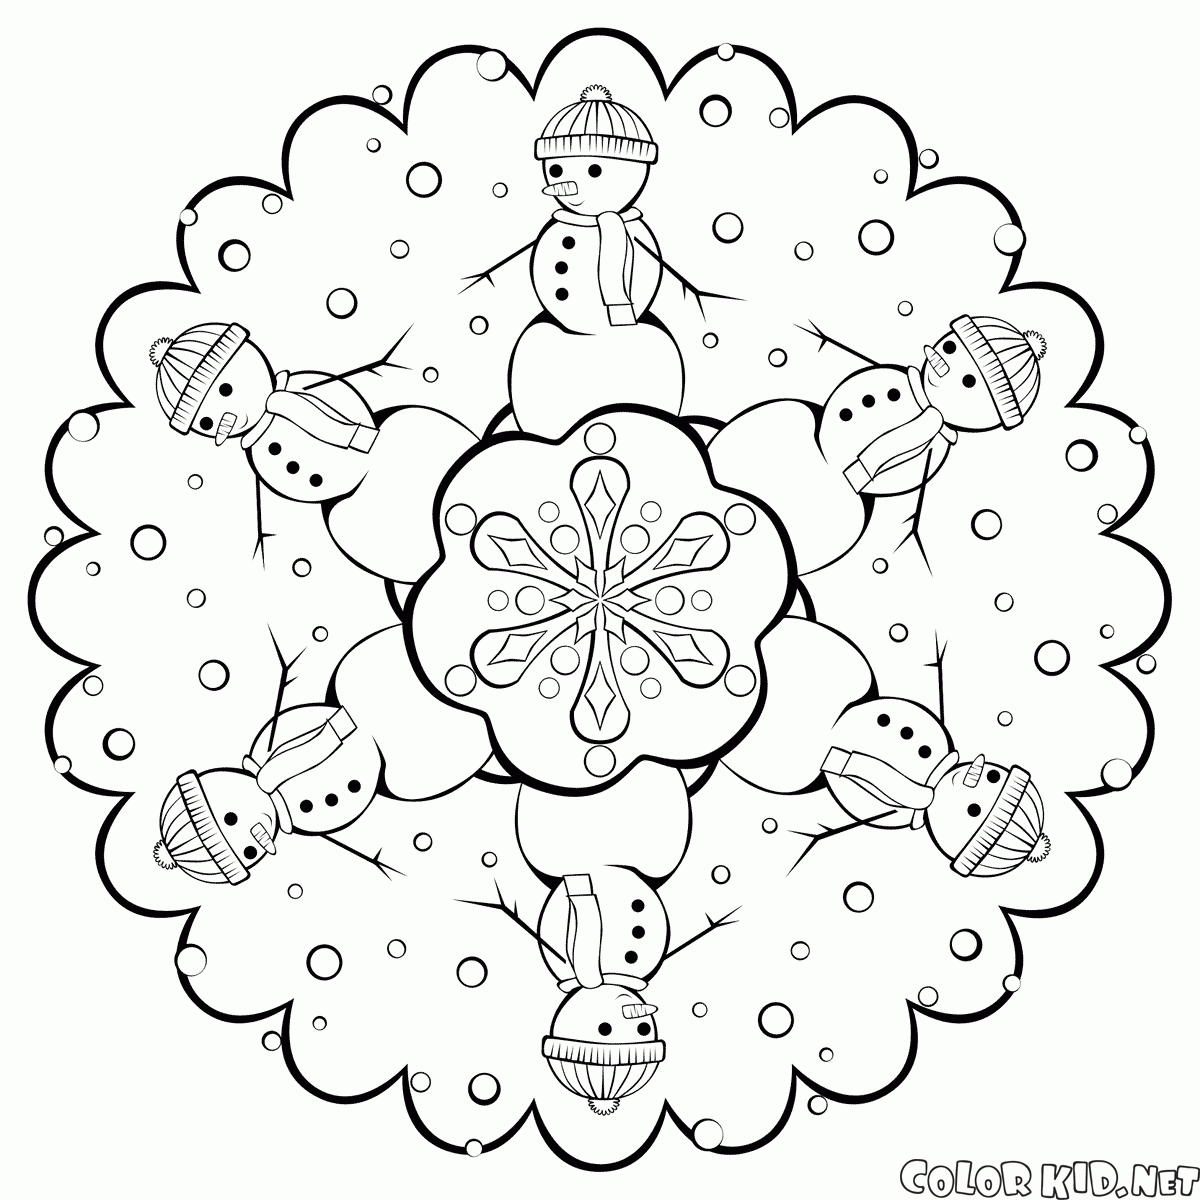 Snowflake with snowmen